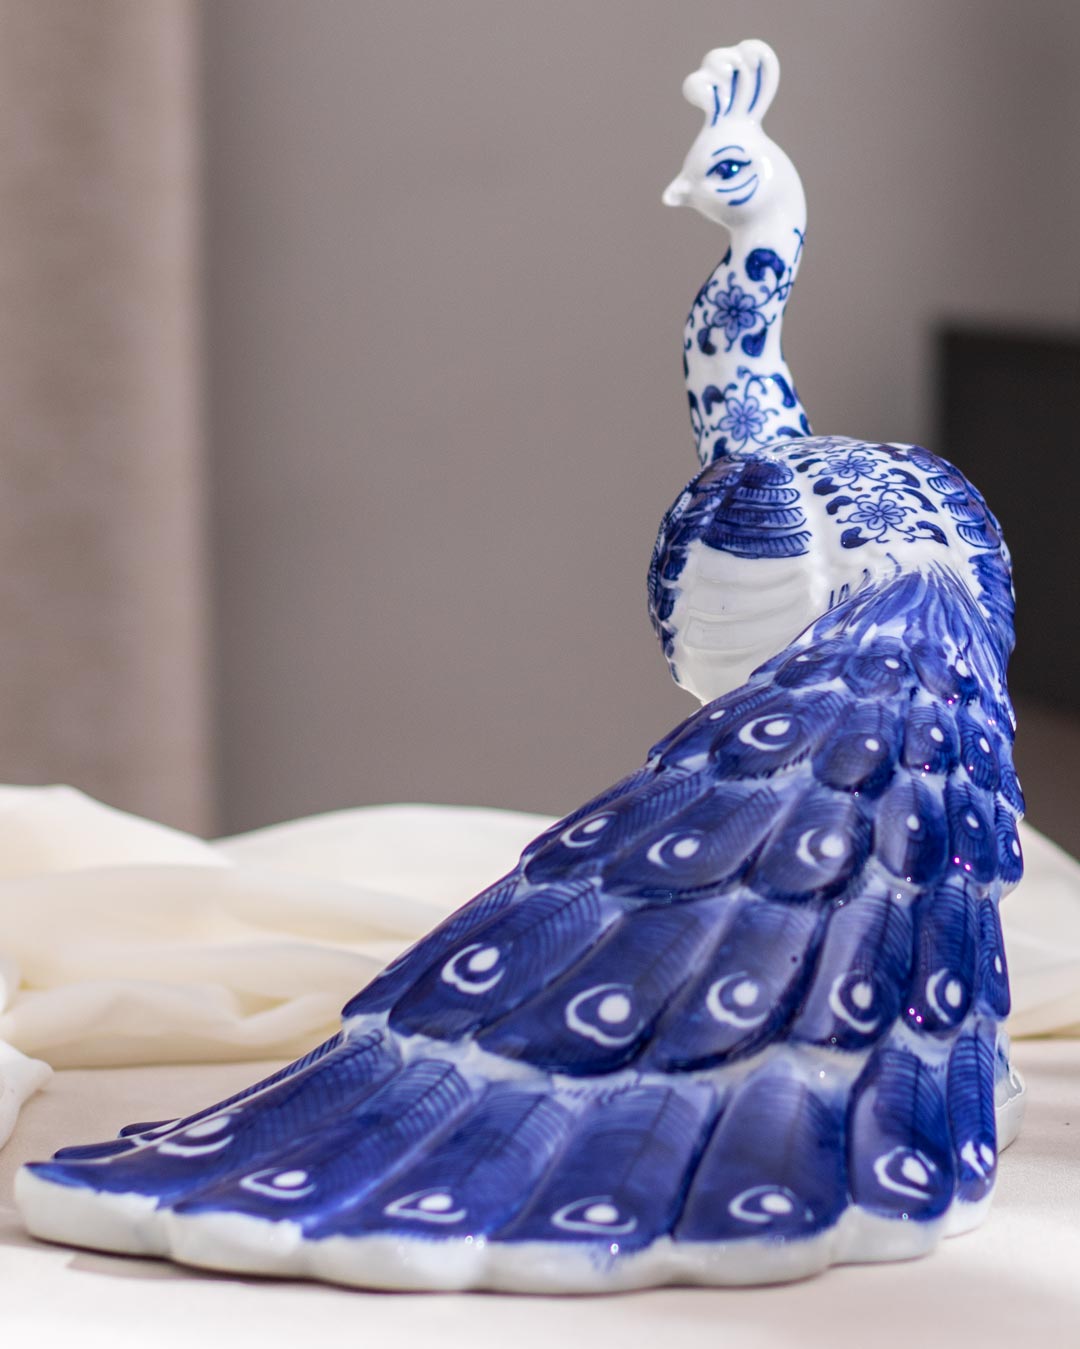 Mesmerizing Peacock Figurine